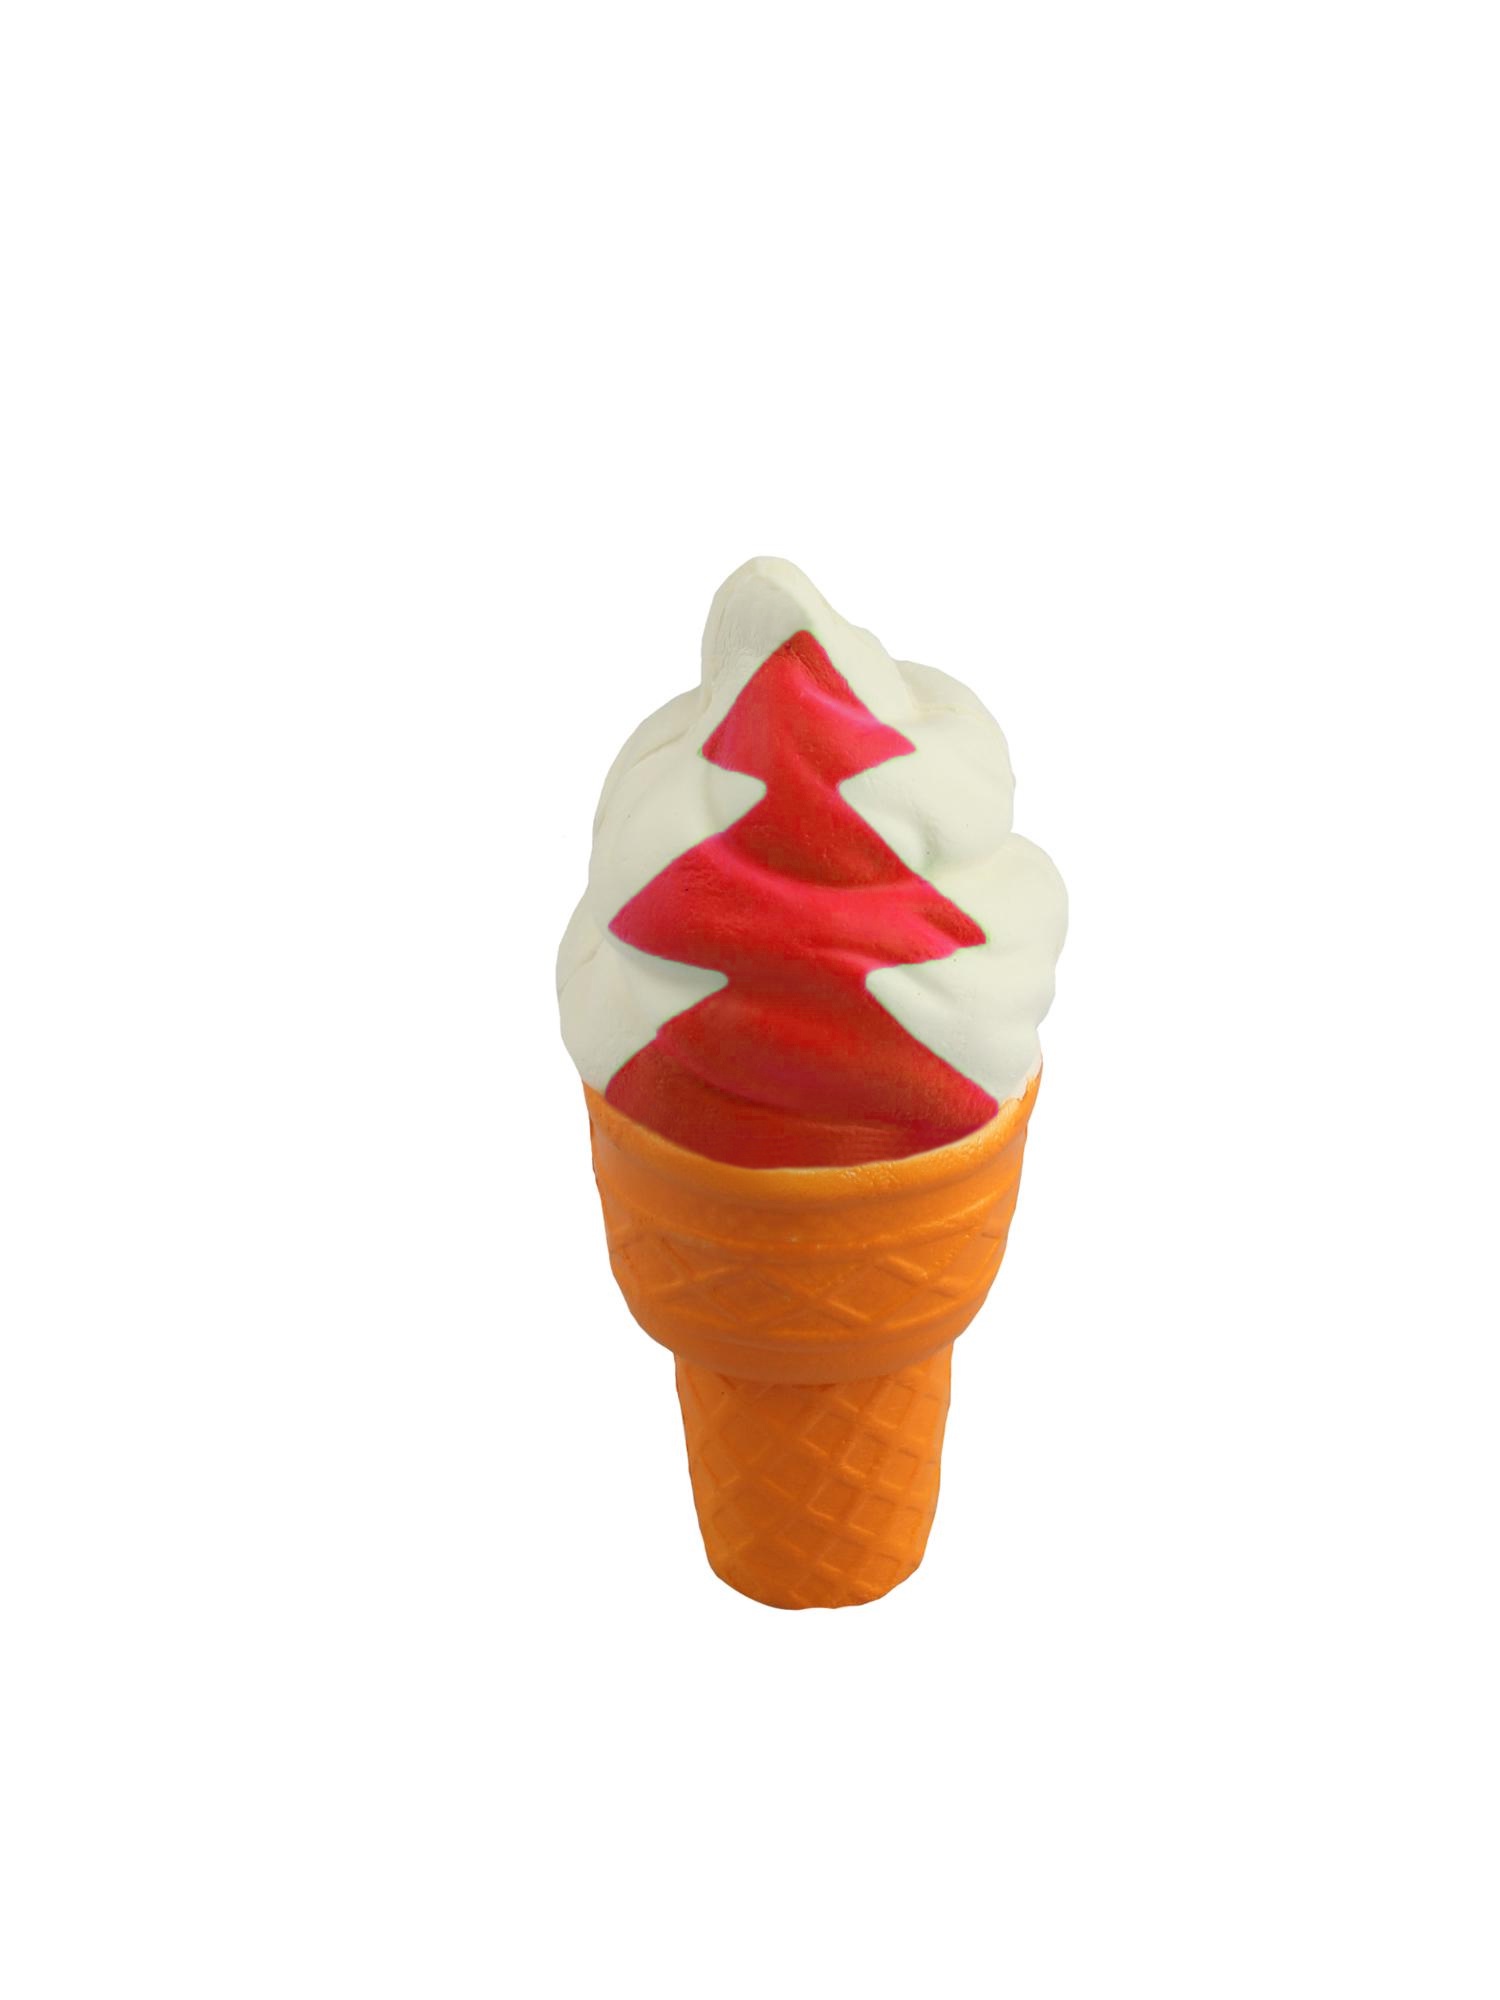 фото Игрушка антистресс Сквиши Мороженное с красной полоской Tiptop